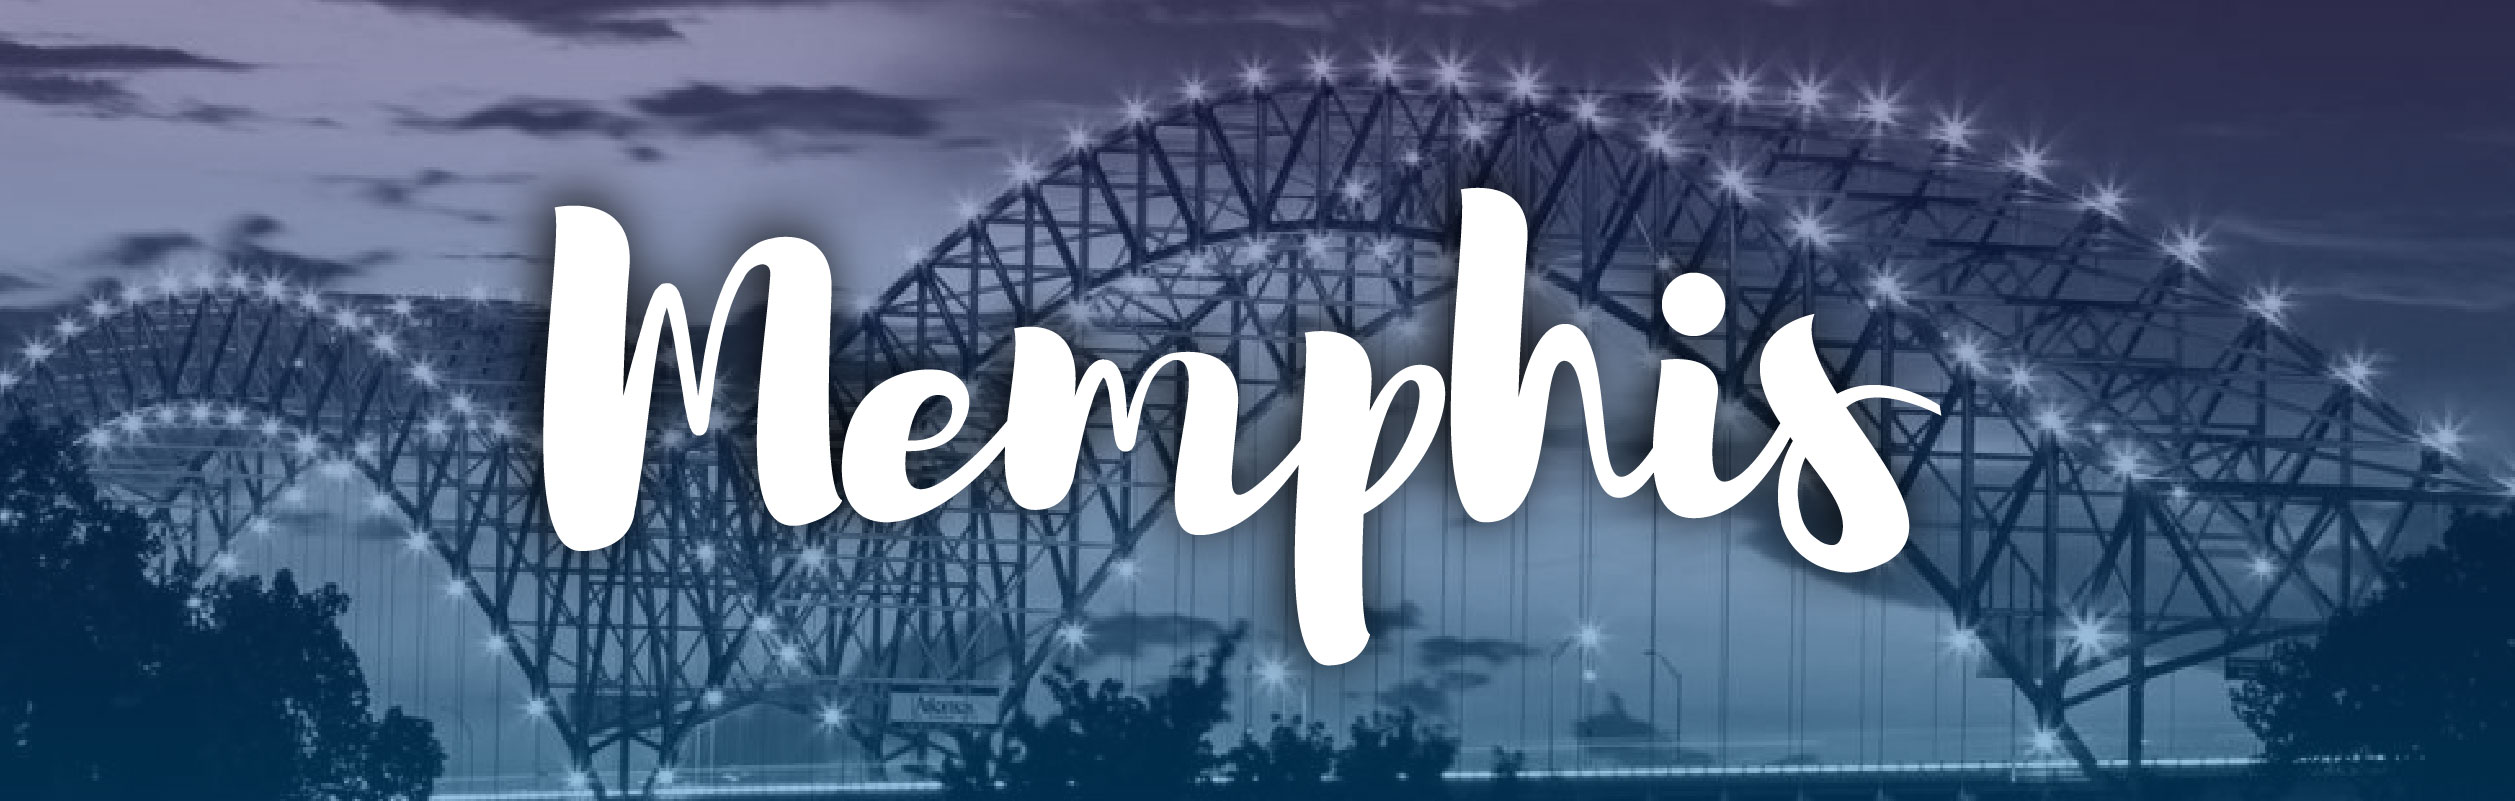 Memphis Header-01